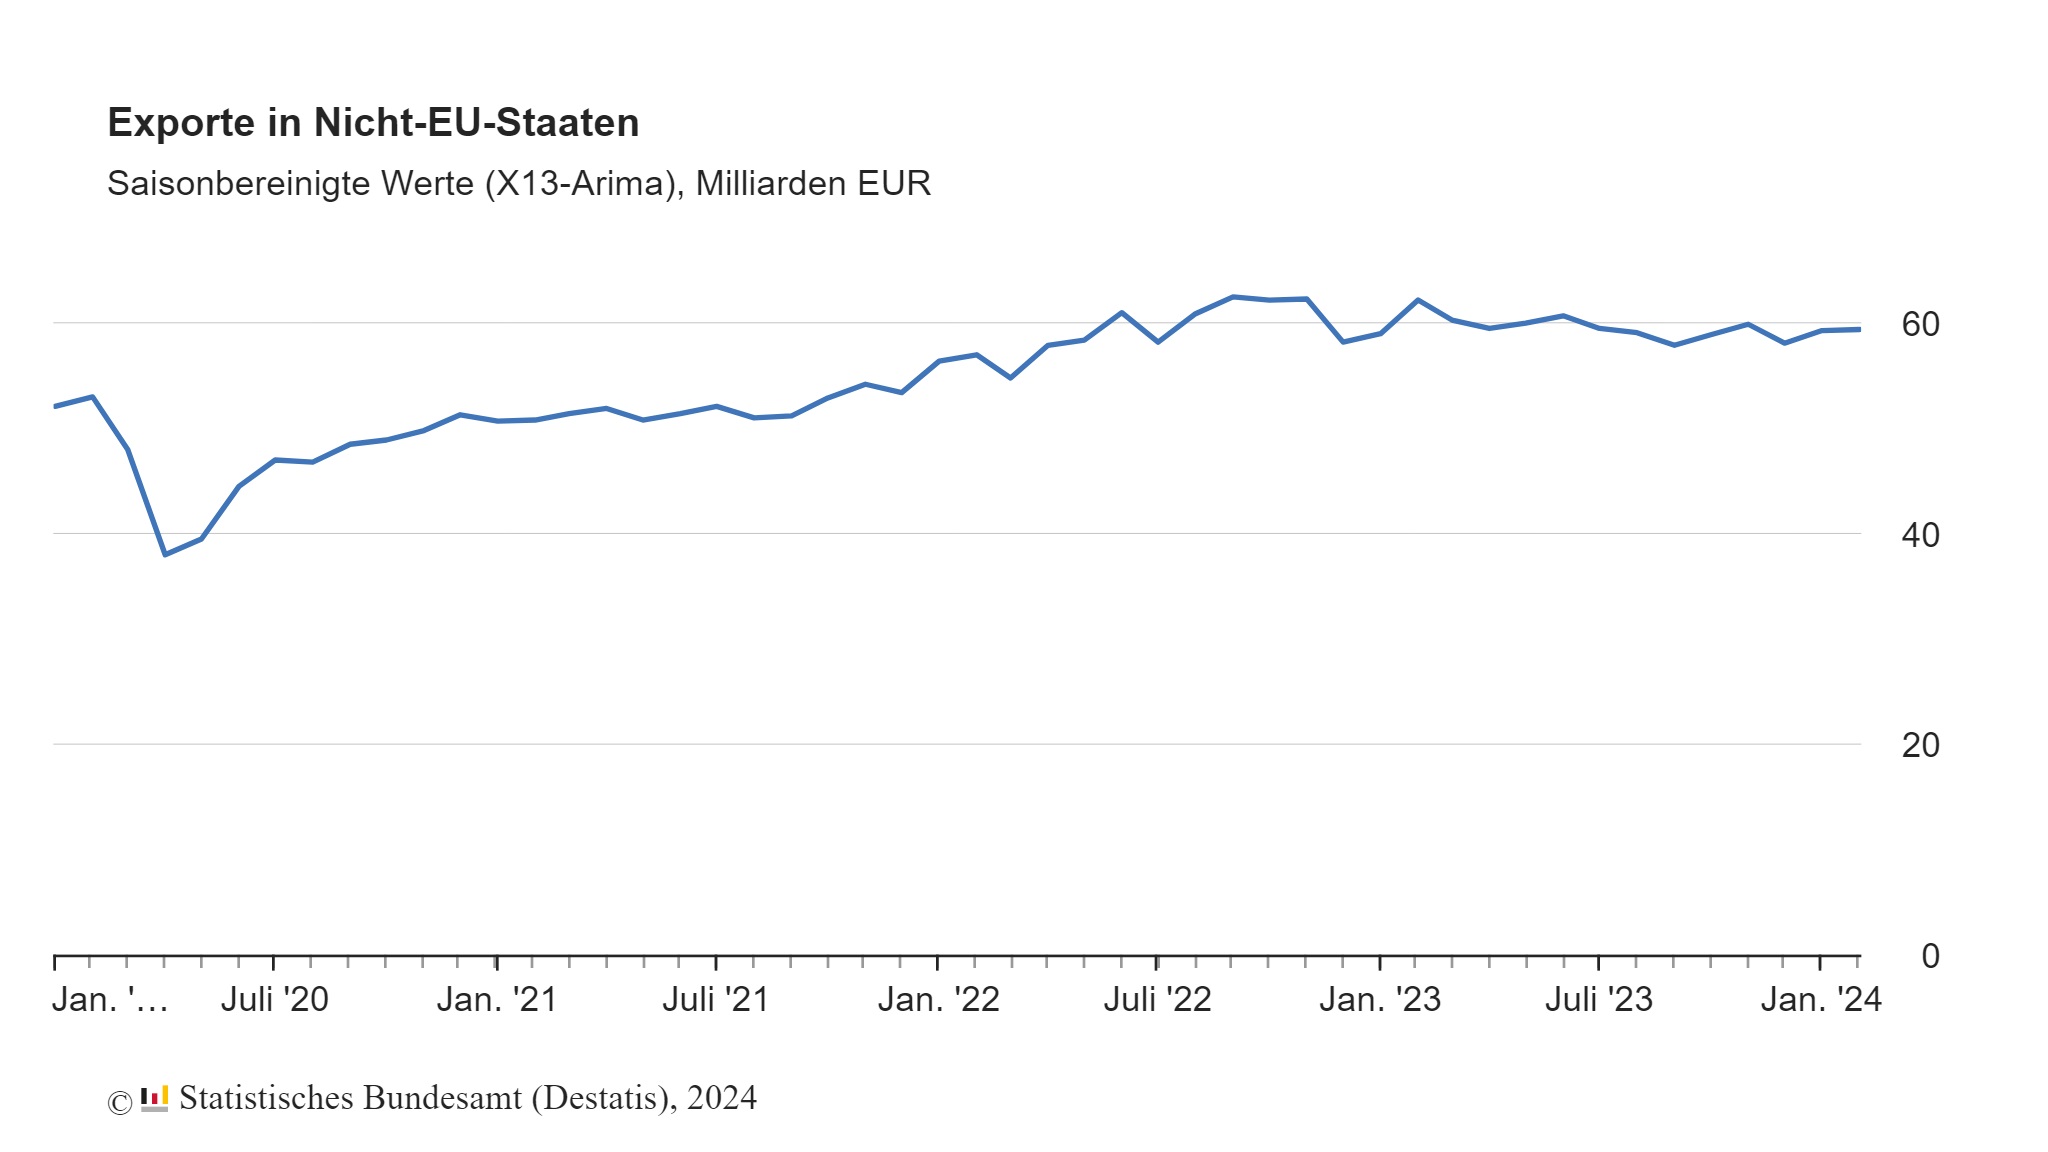 Exporte in Nicht-EU-Staaten im Februar gestiegen